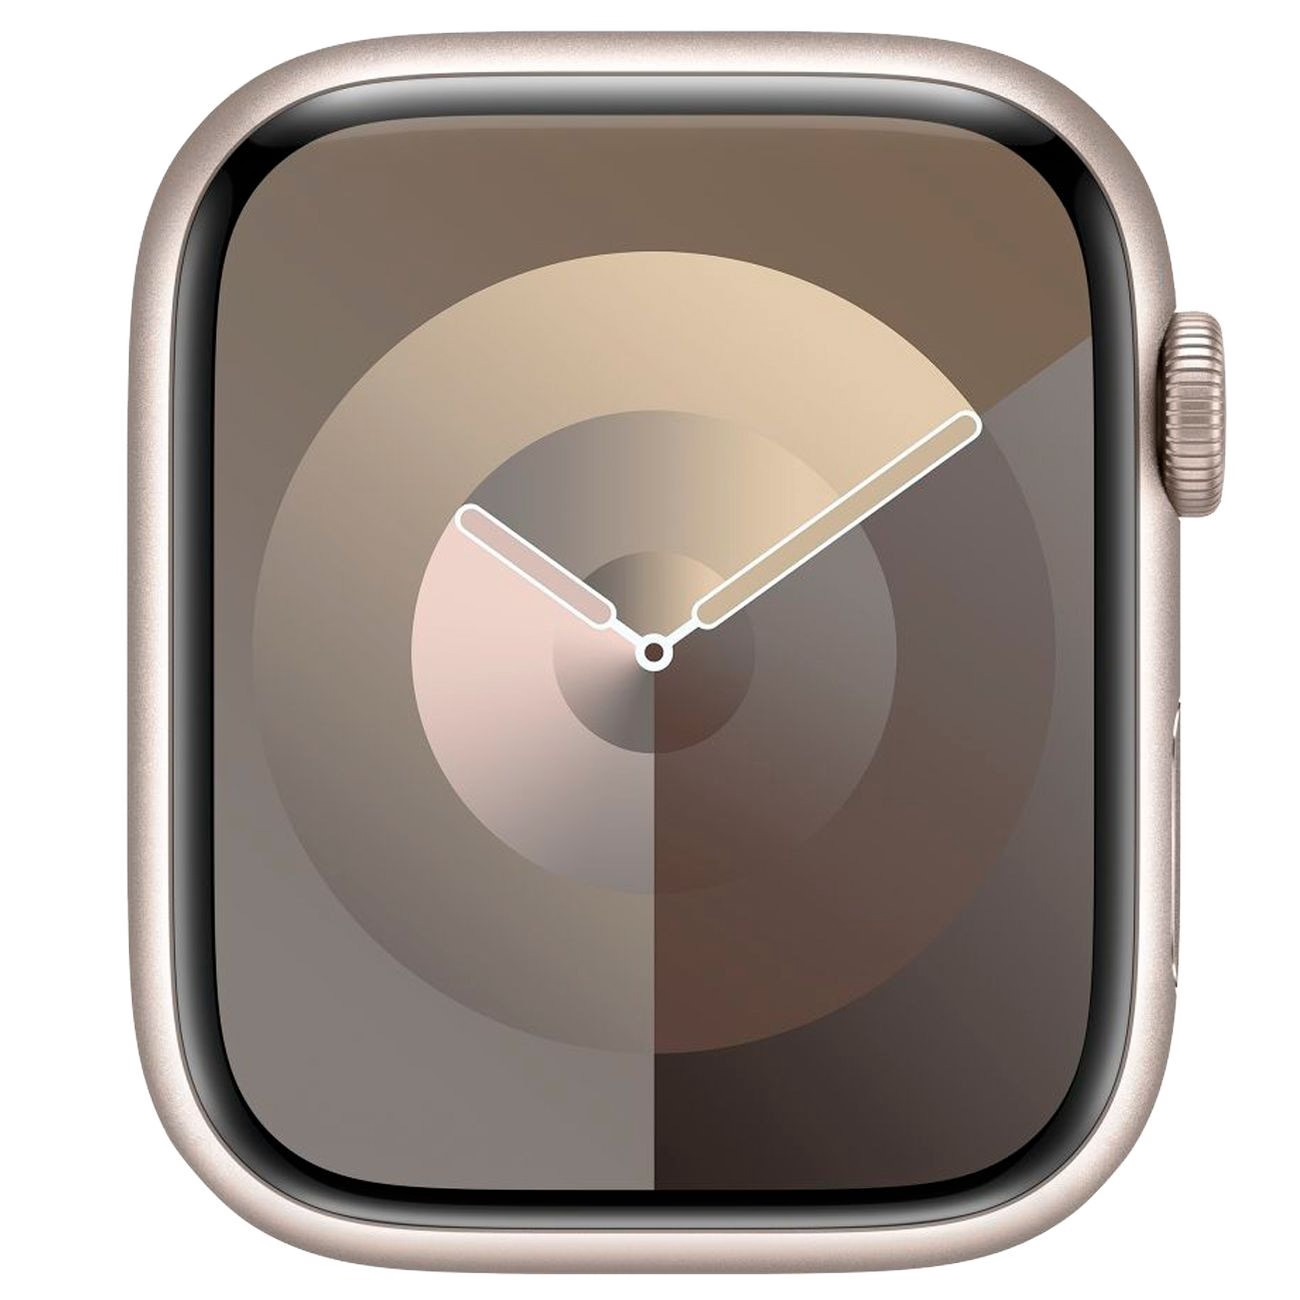 Купить смарт-часы apple watch s9 41mm starlight aluminium Apple Watch 9 в официальном магазине Apple, Samsung, Xiaomi. iPixel.ru Купить, заказ, кредит, рассрочка, отзывы,  характеристики, цена,  фотографии, в подарок.